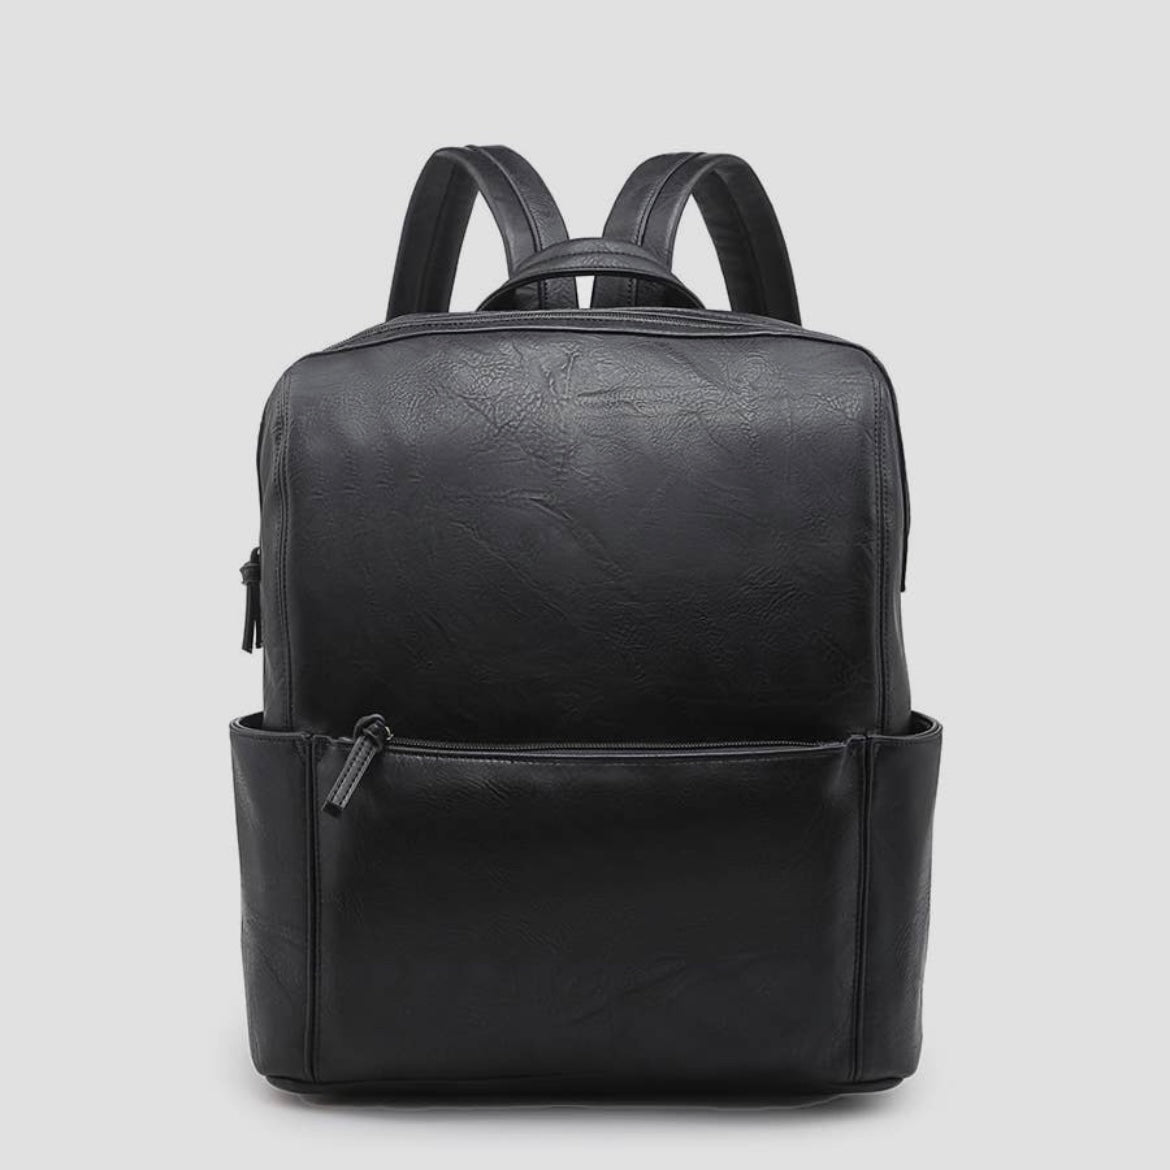 Jen & Co James Vegan Leather Backpack, Black